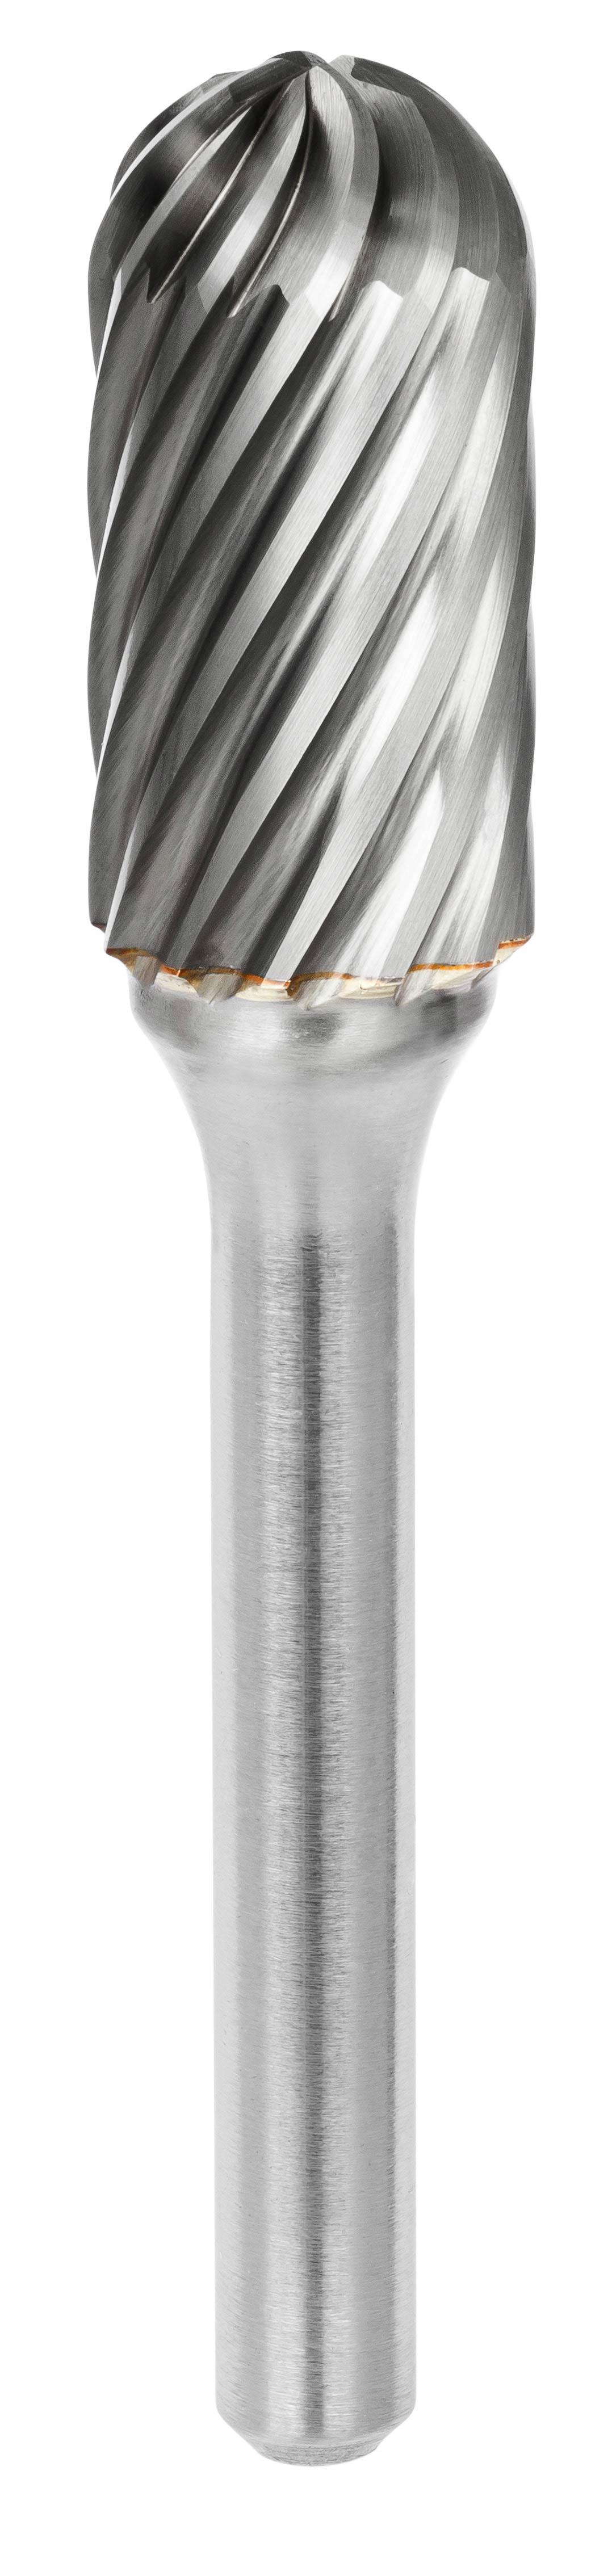 642 Fraise lime carbure cylindrique bout rond avec denture croisée Ø3,2 mm - Coupe A 